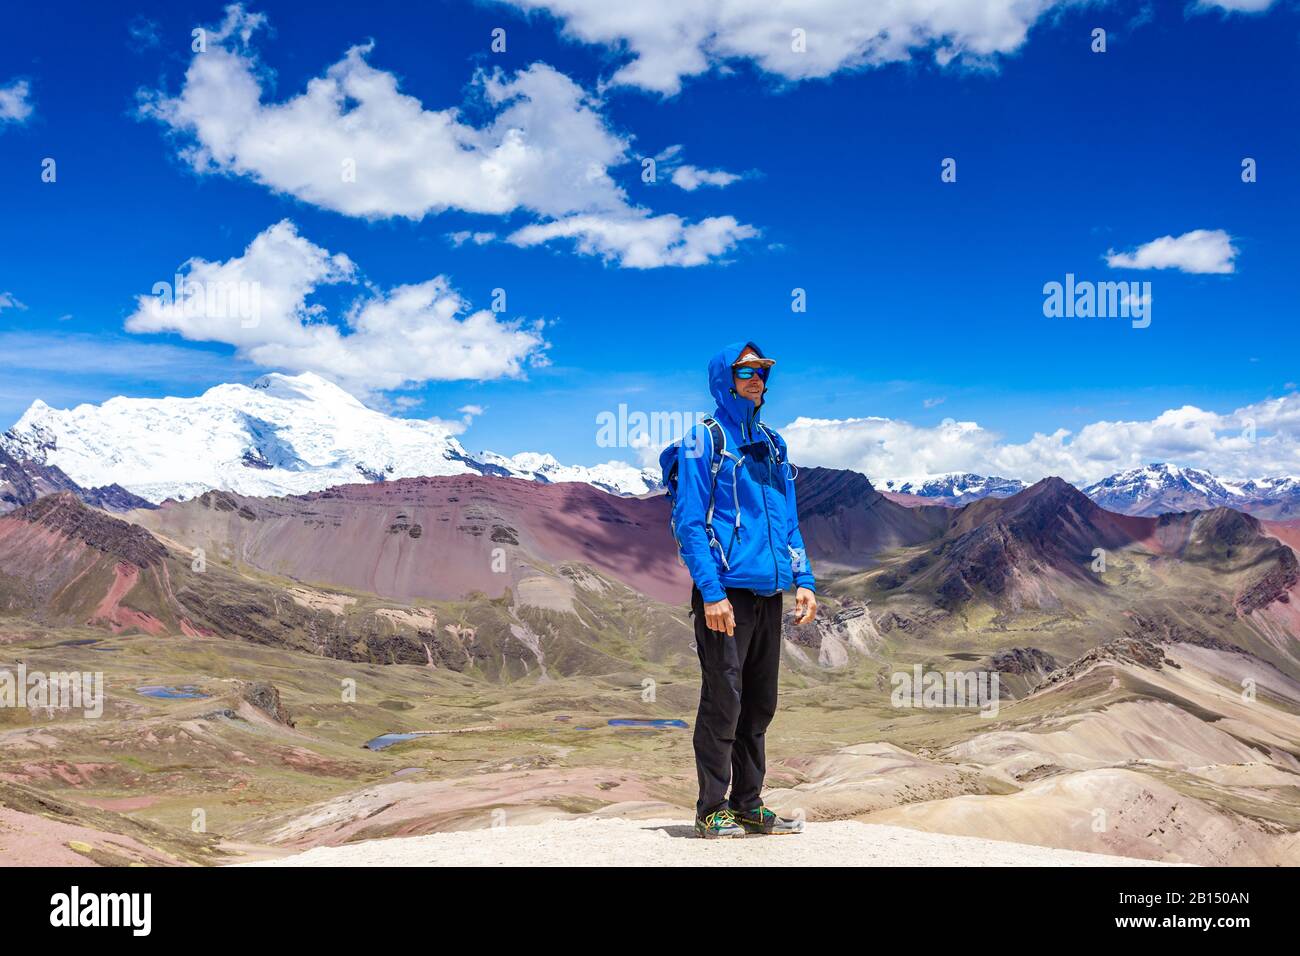 Ein glücklicher Mann steht auf dem Gipfel des Regenbogengebirges Von Peru. Peruanische Anden. Ausangate Berg. Stockfoto